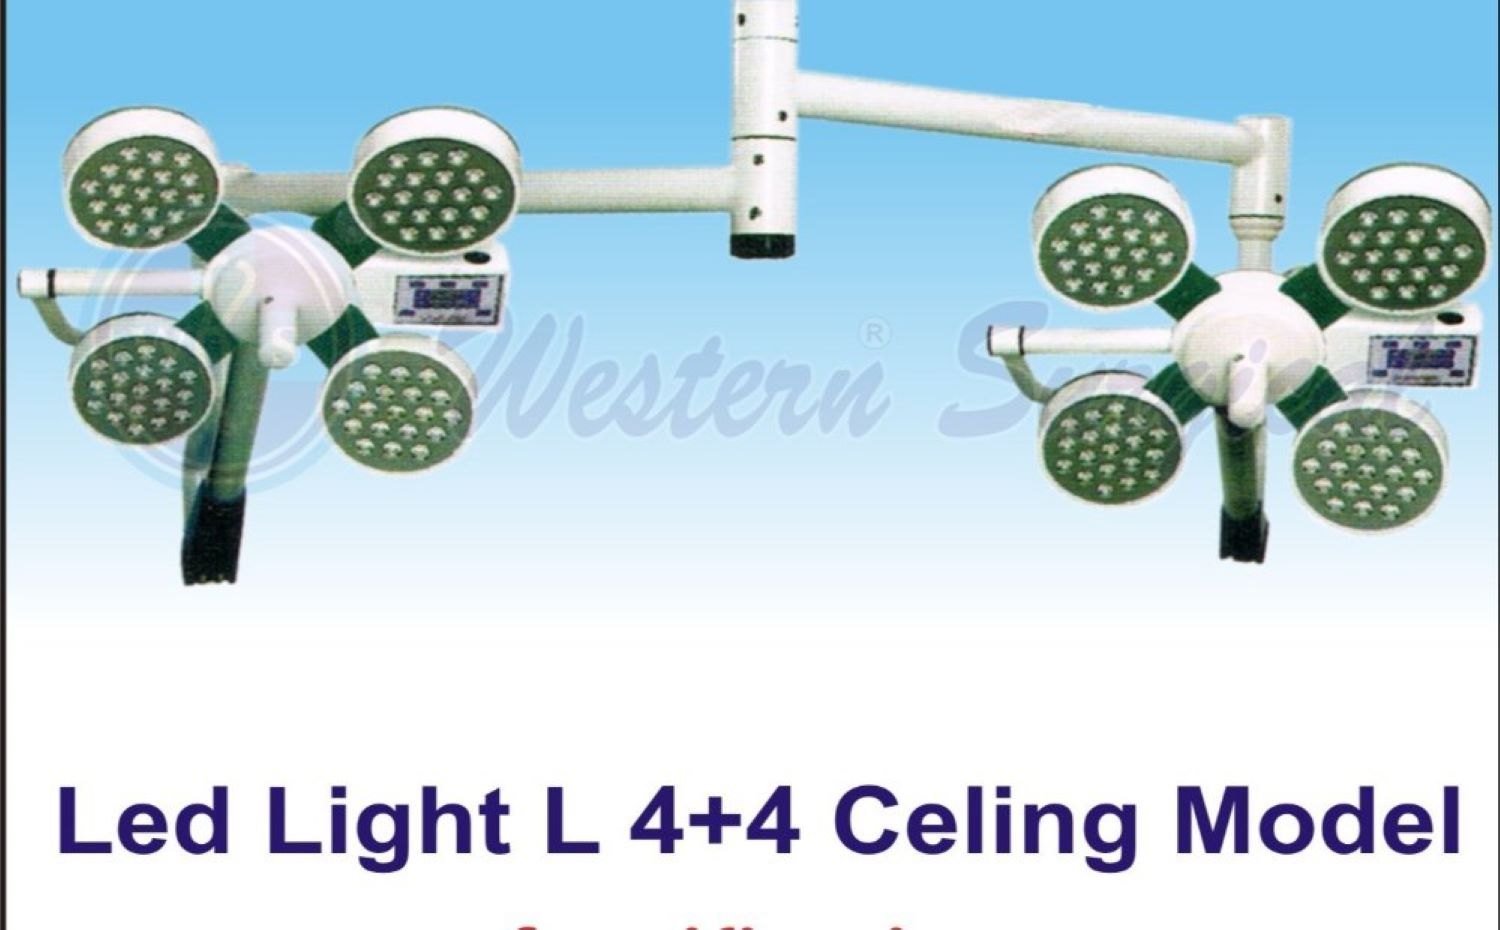 LED LIGHT L 4-4 CEILING MODEL